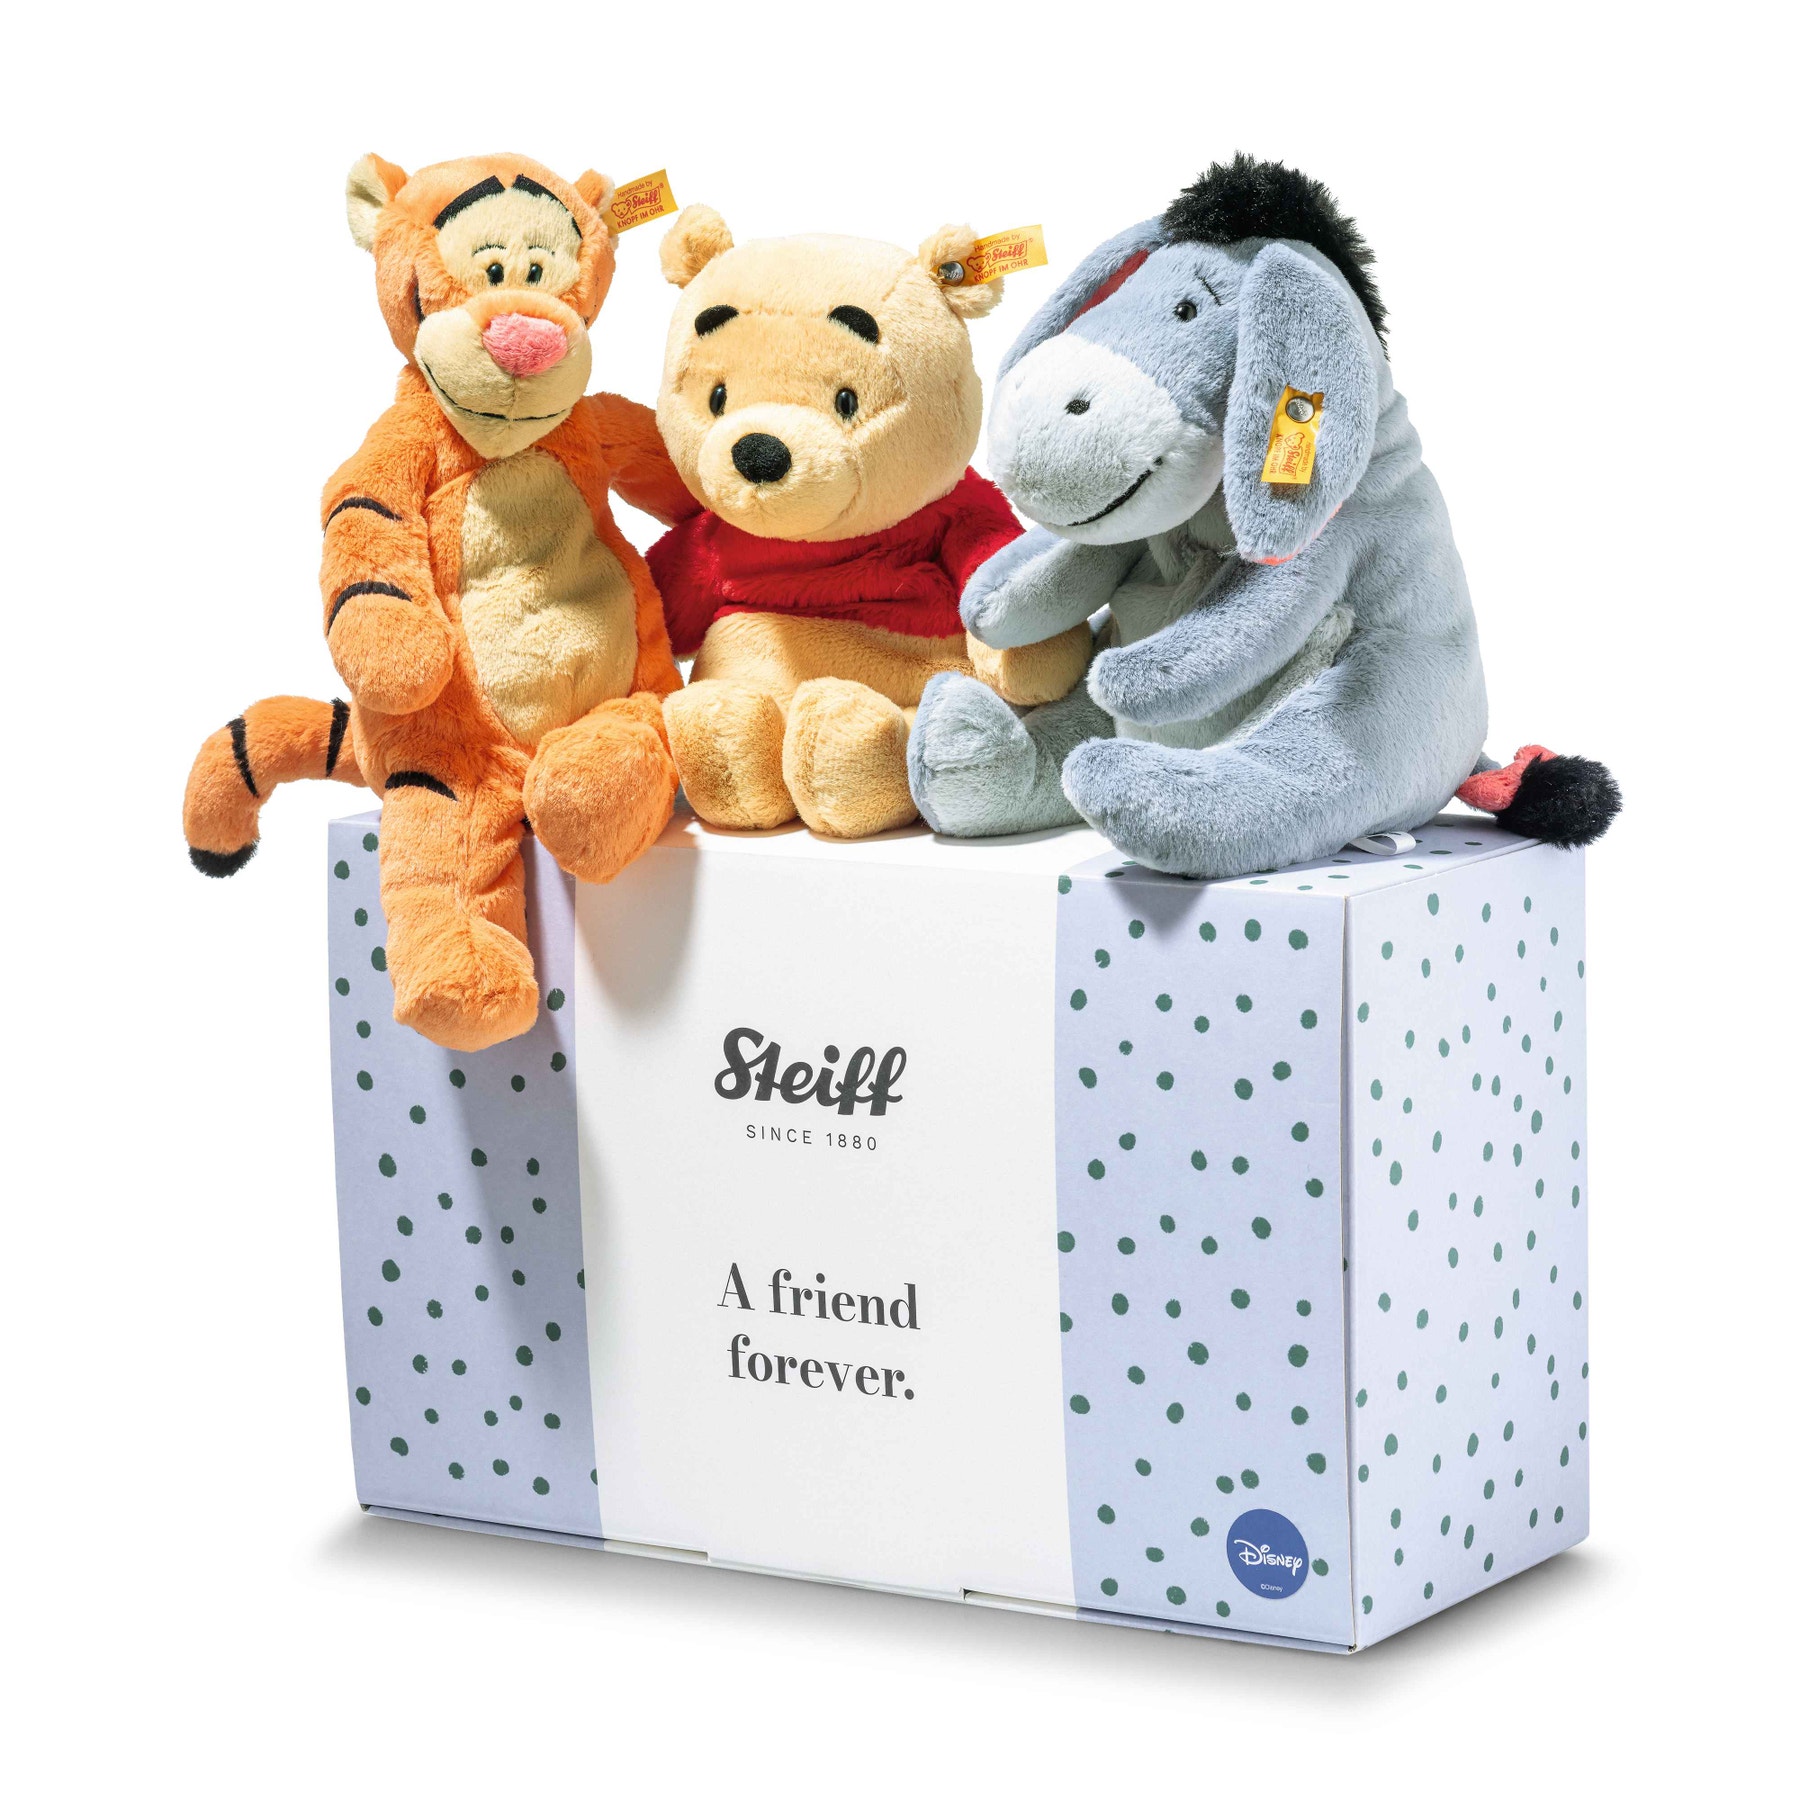 Disney Originals Winnie the Pooh gift set